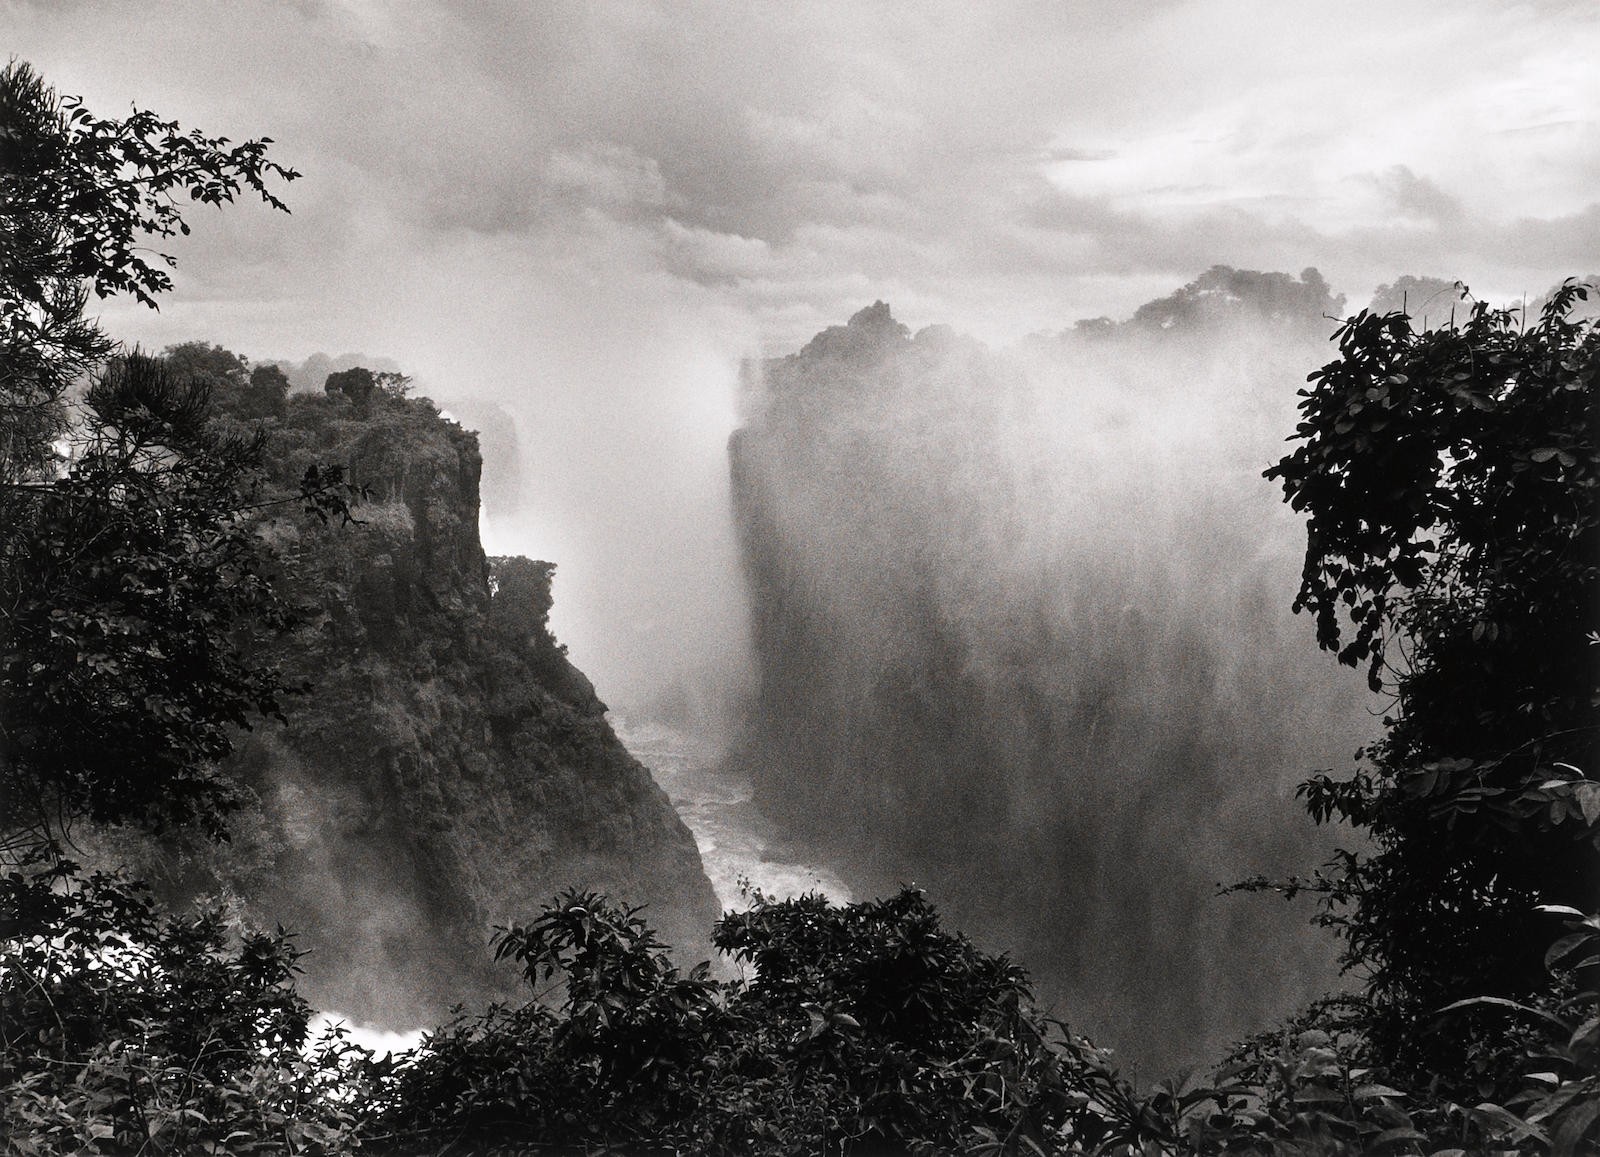 Водопад Виктория, Зимбабве, 2008. Автор Себастьян Сальгадо